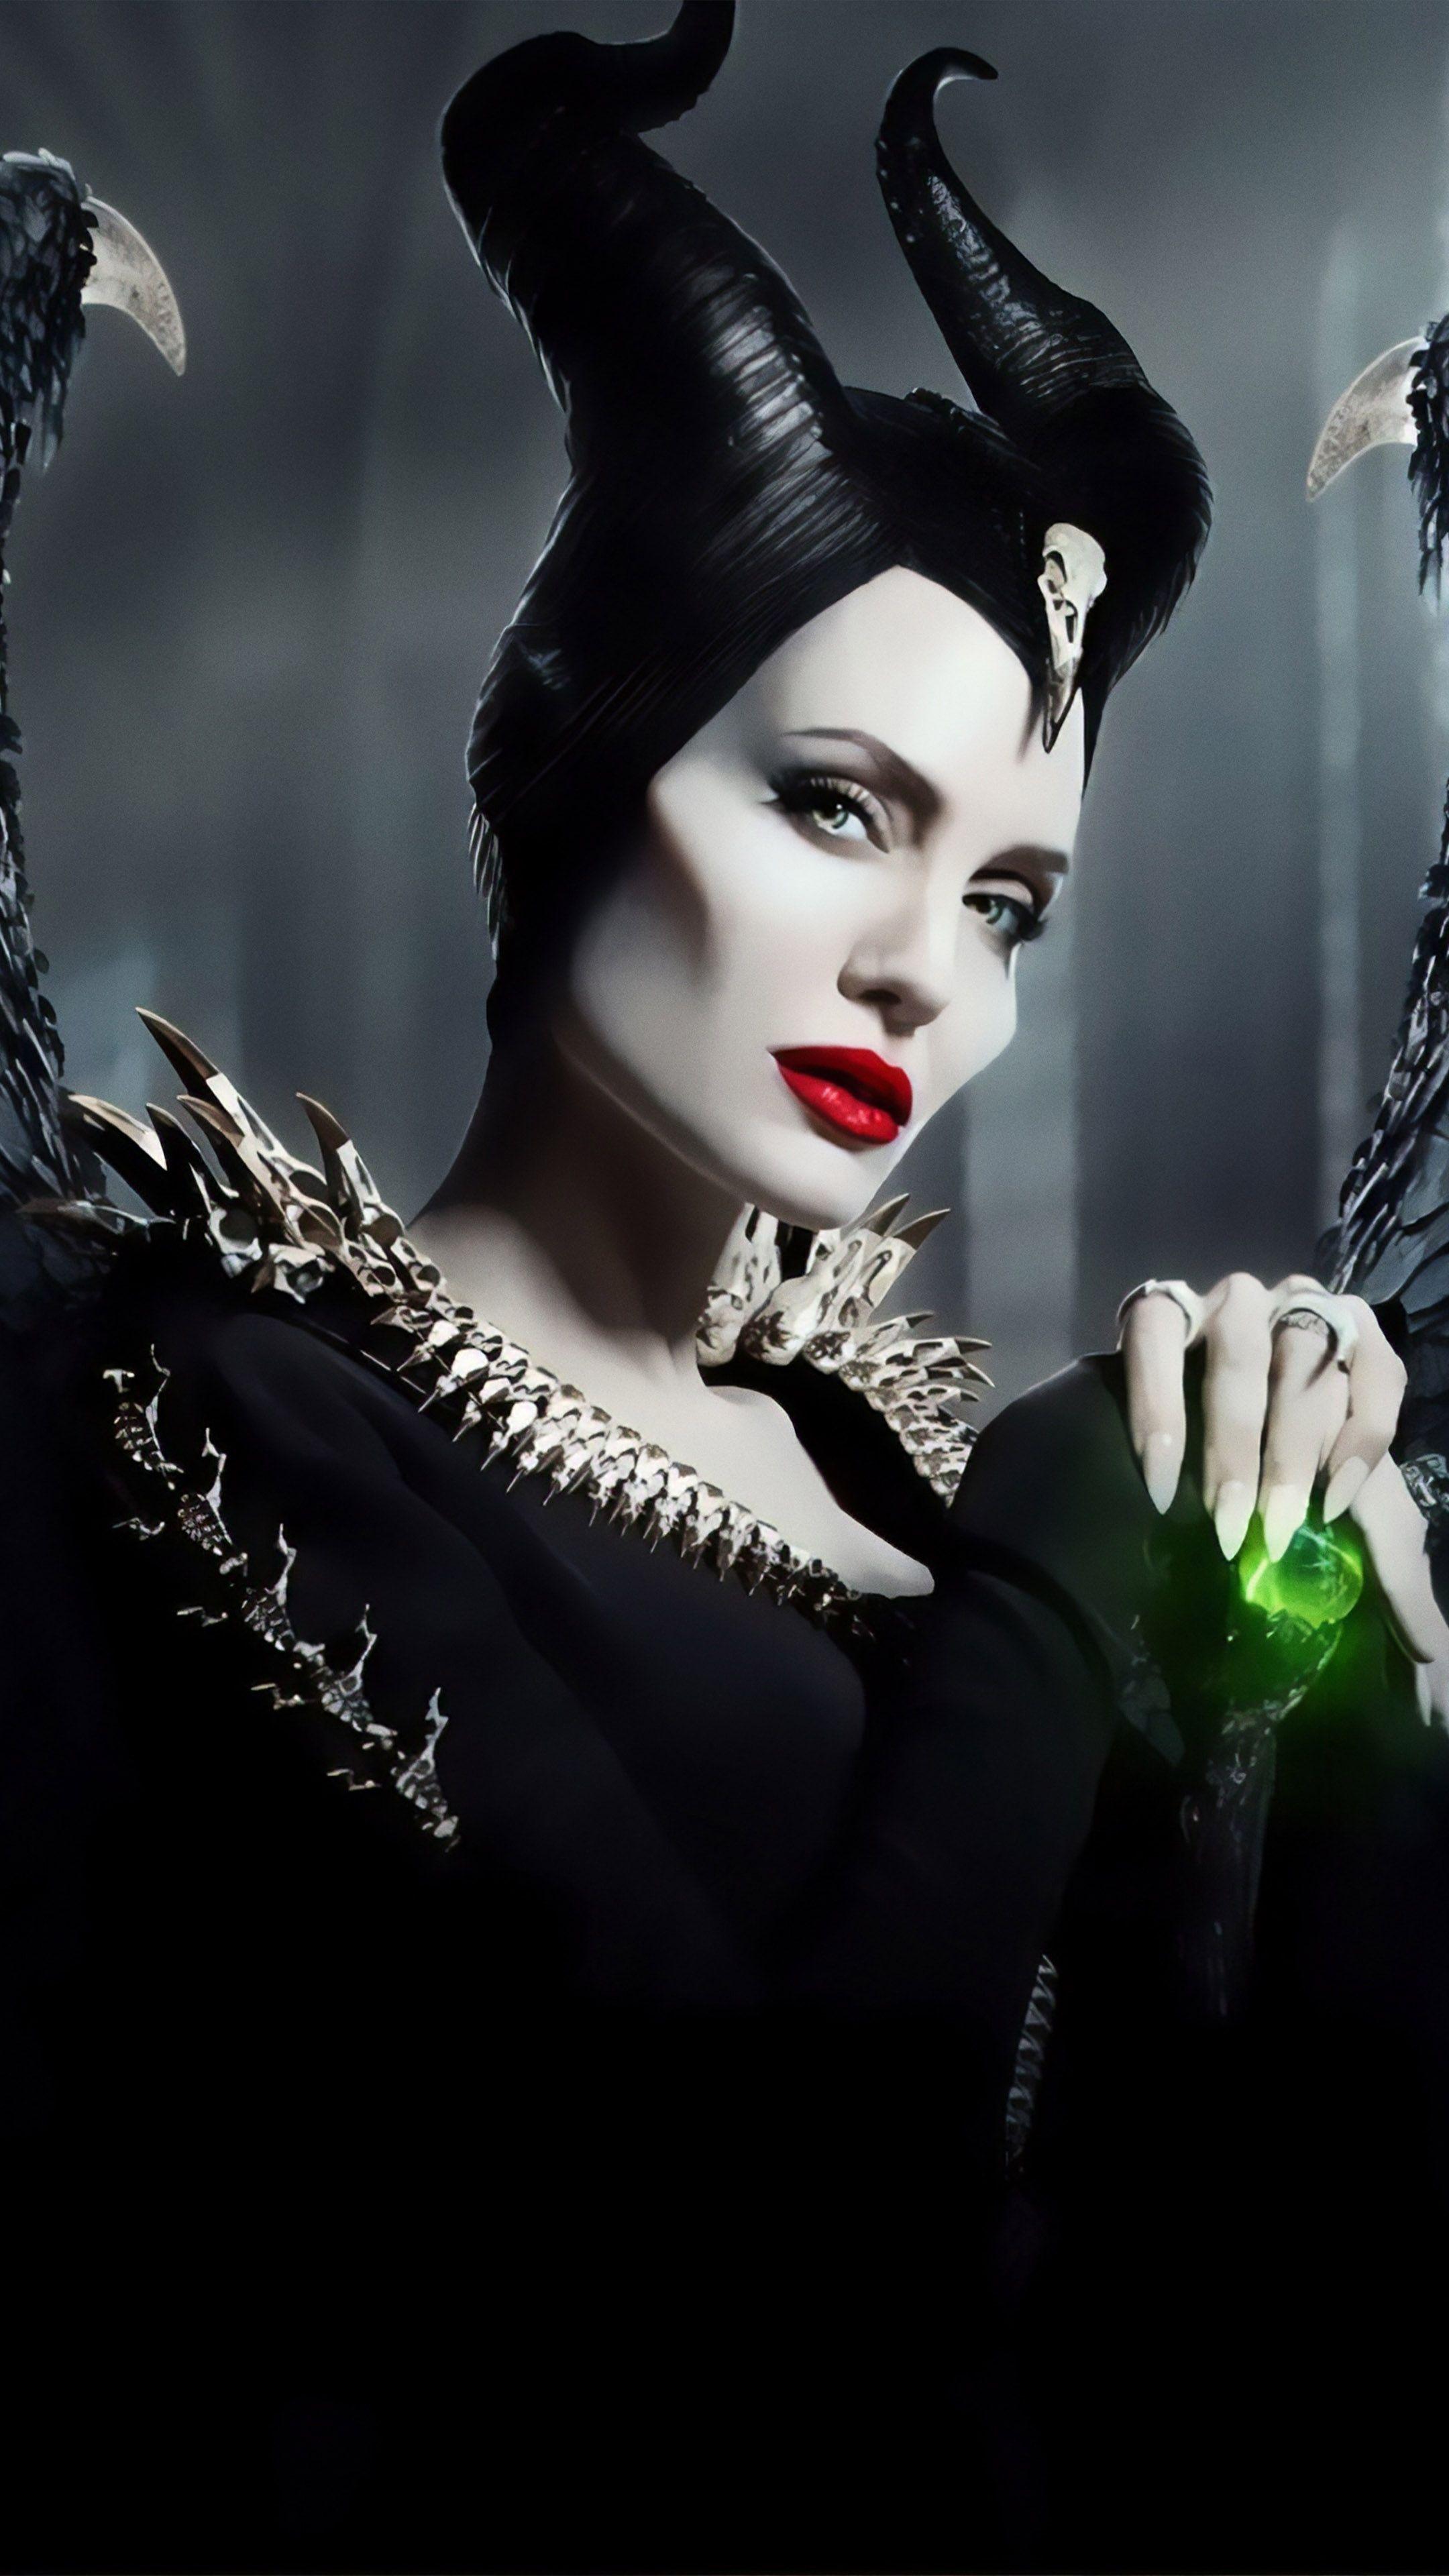 Maleficent: Mistress Of Evil Wallpaper Free Maleficent